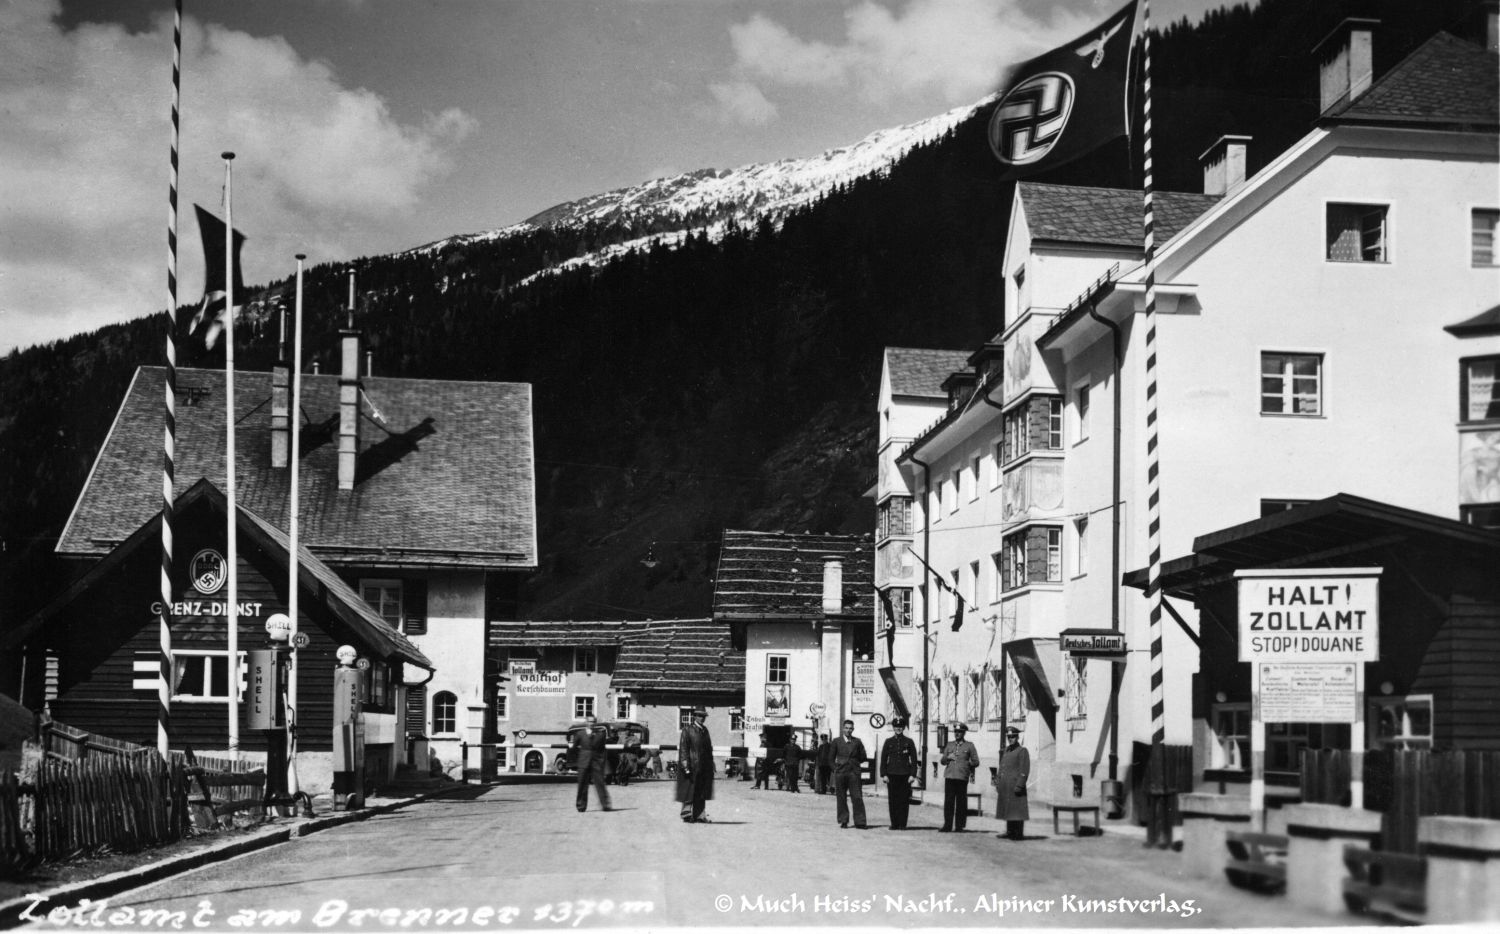 Brenner 1943